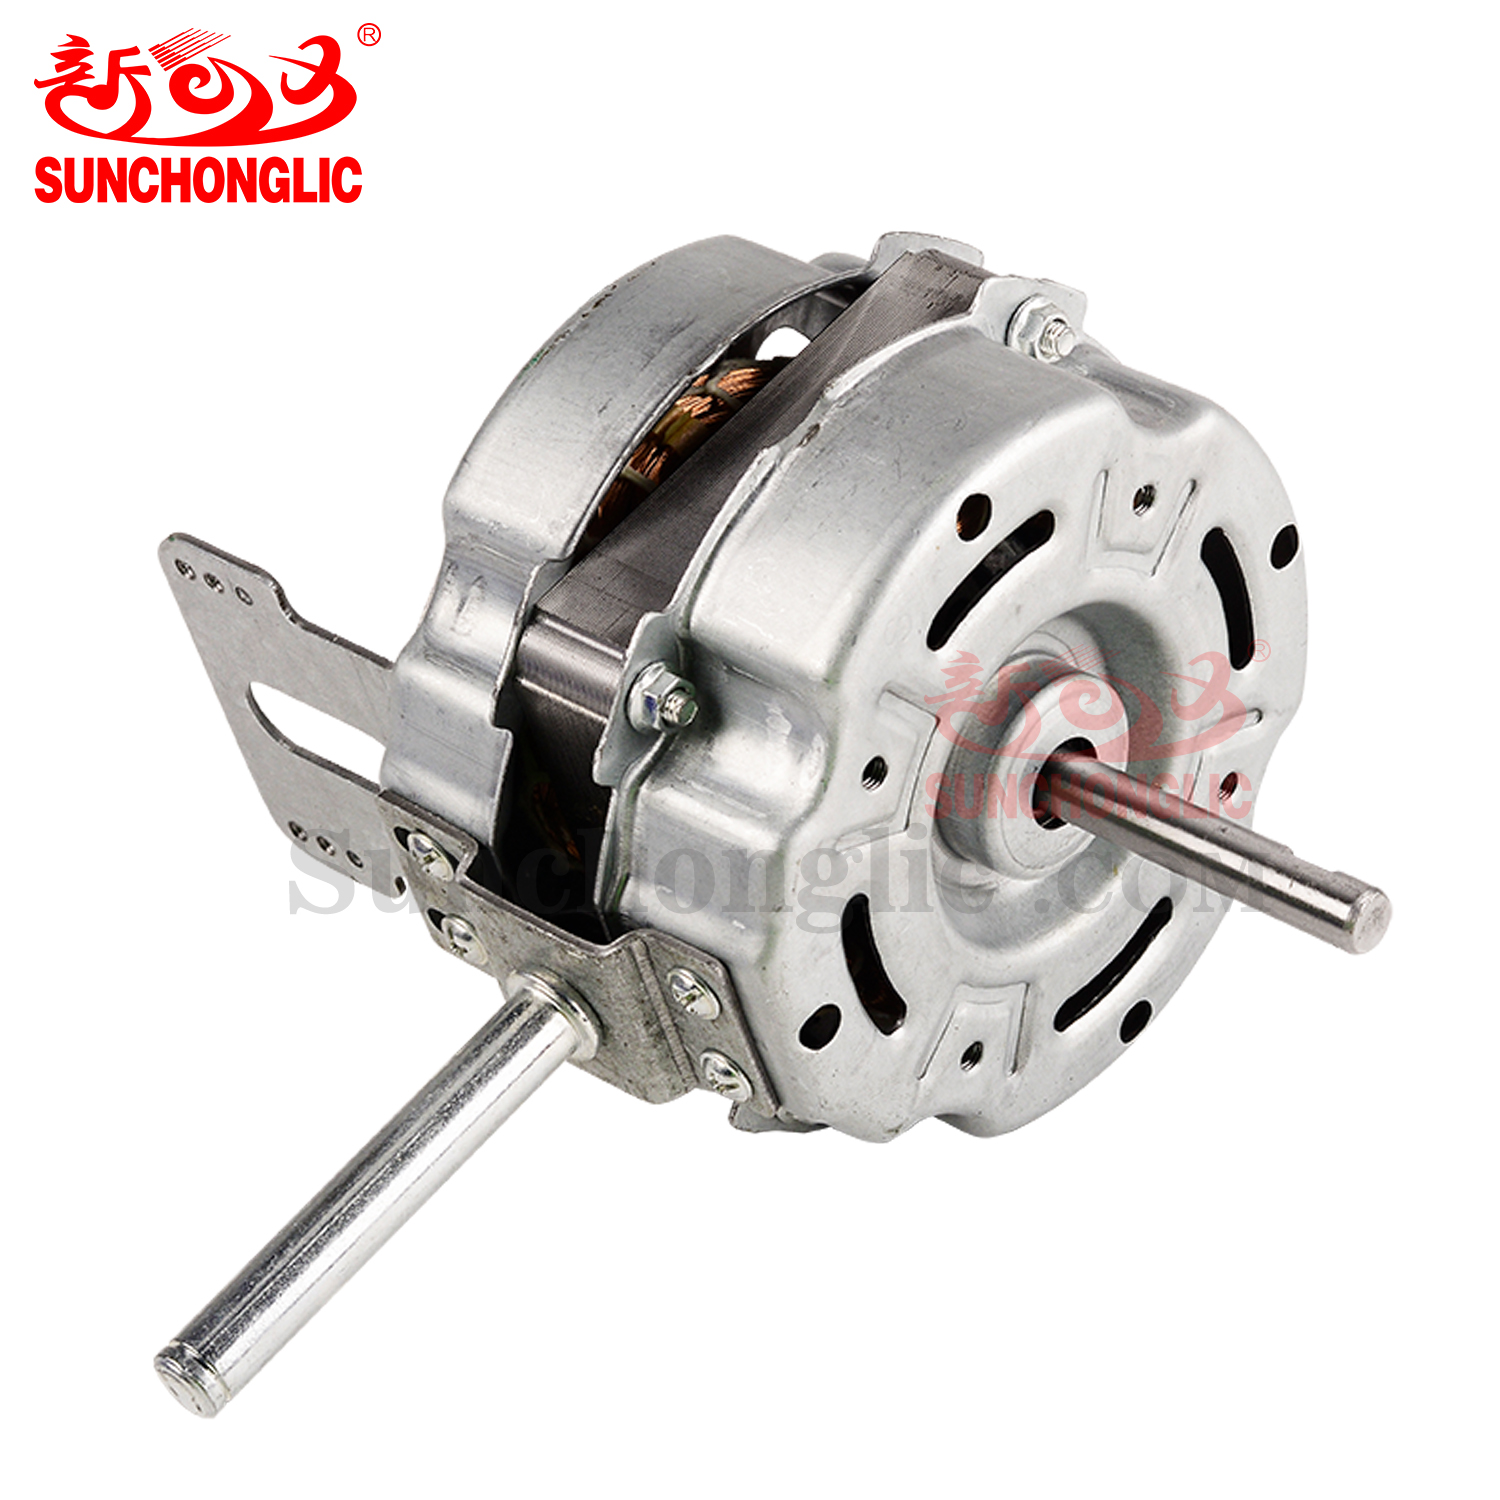 Fan Motor - Business commercial fan-20mm-Copper-Ball bearing-B06010170